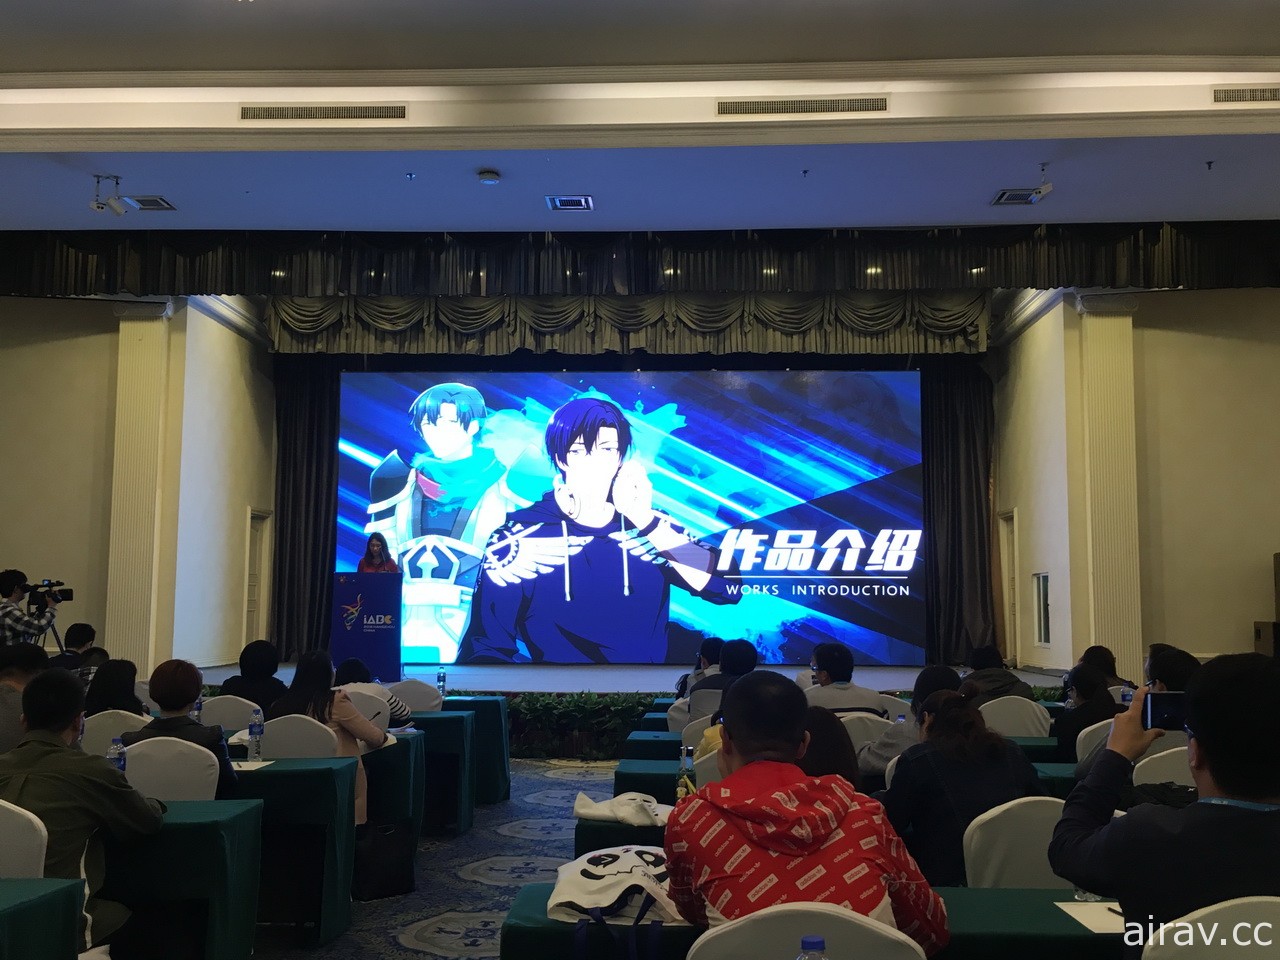 2018 第 14 届杭州中国国际动漫节开幕记者会 预告明日活动内容亮点